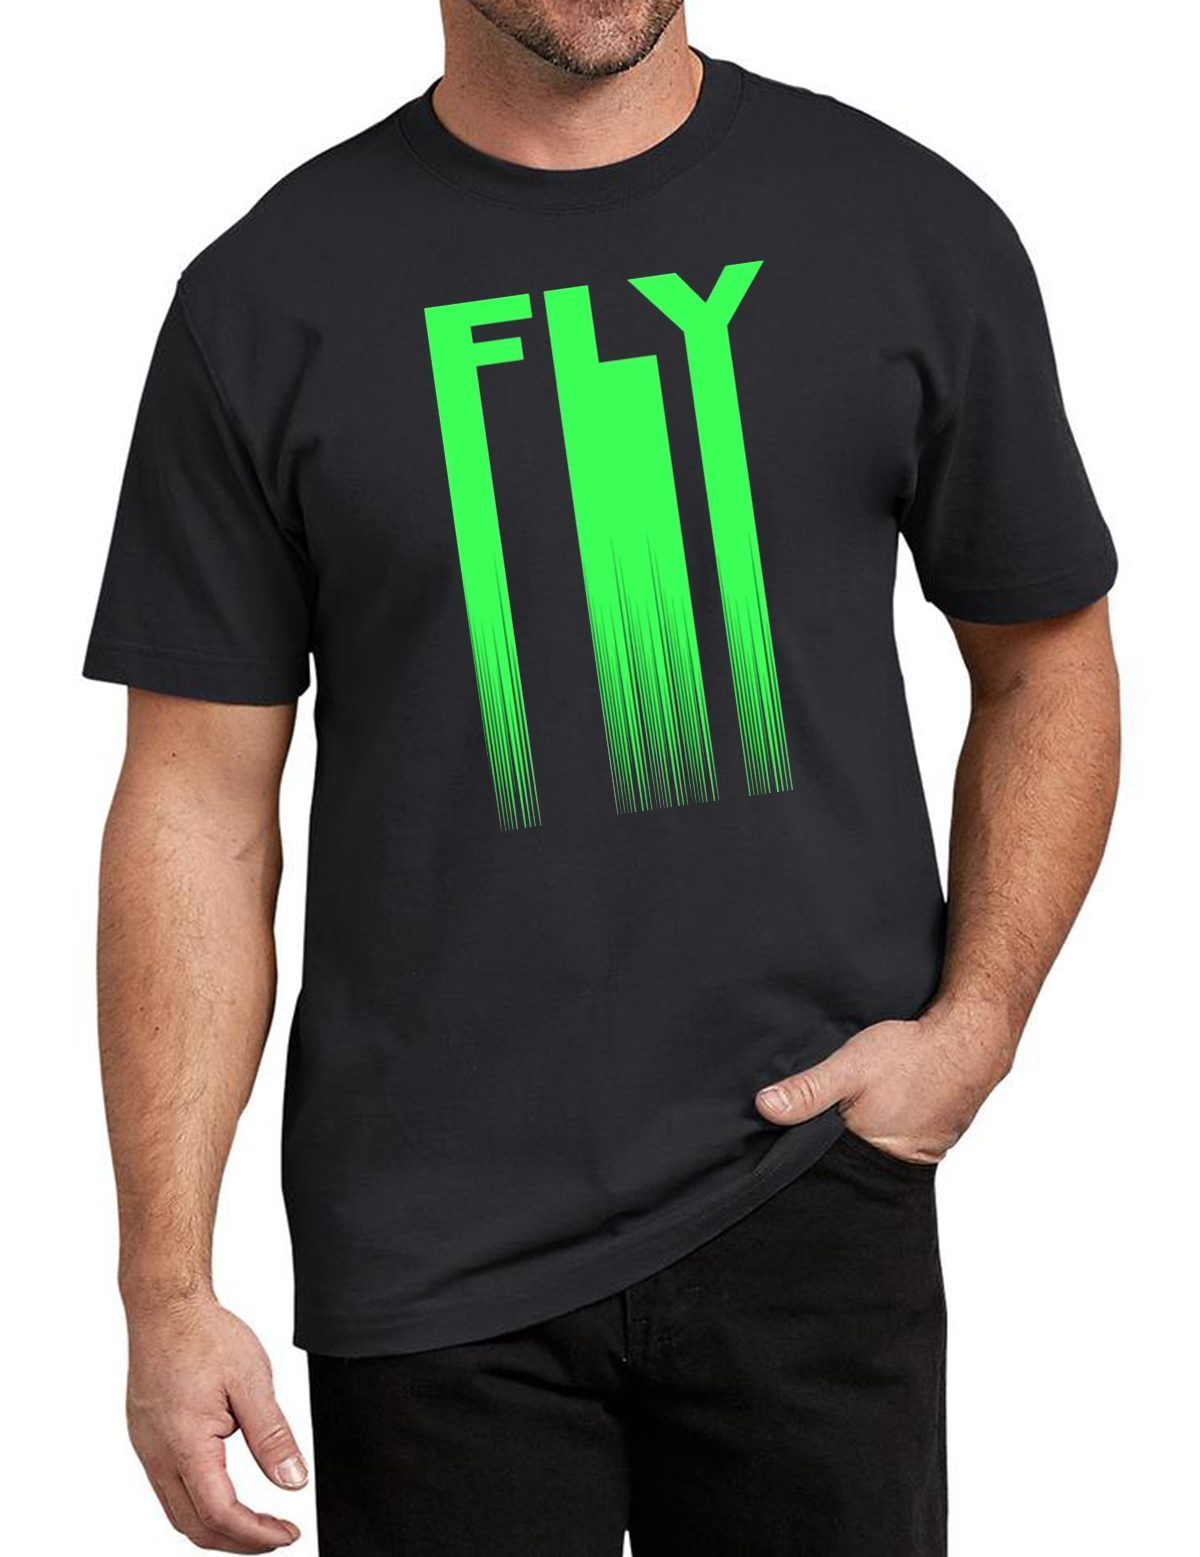 Philadelphia Eagles Fly 2019 Tee Shirt for mens womens - ShirtsOwl Office